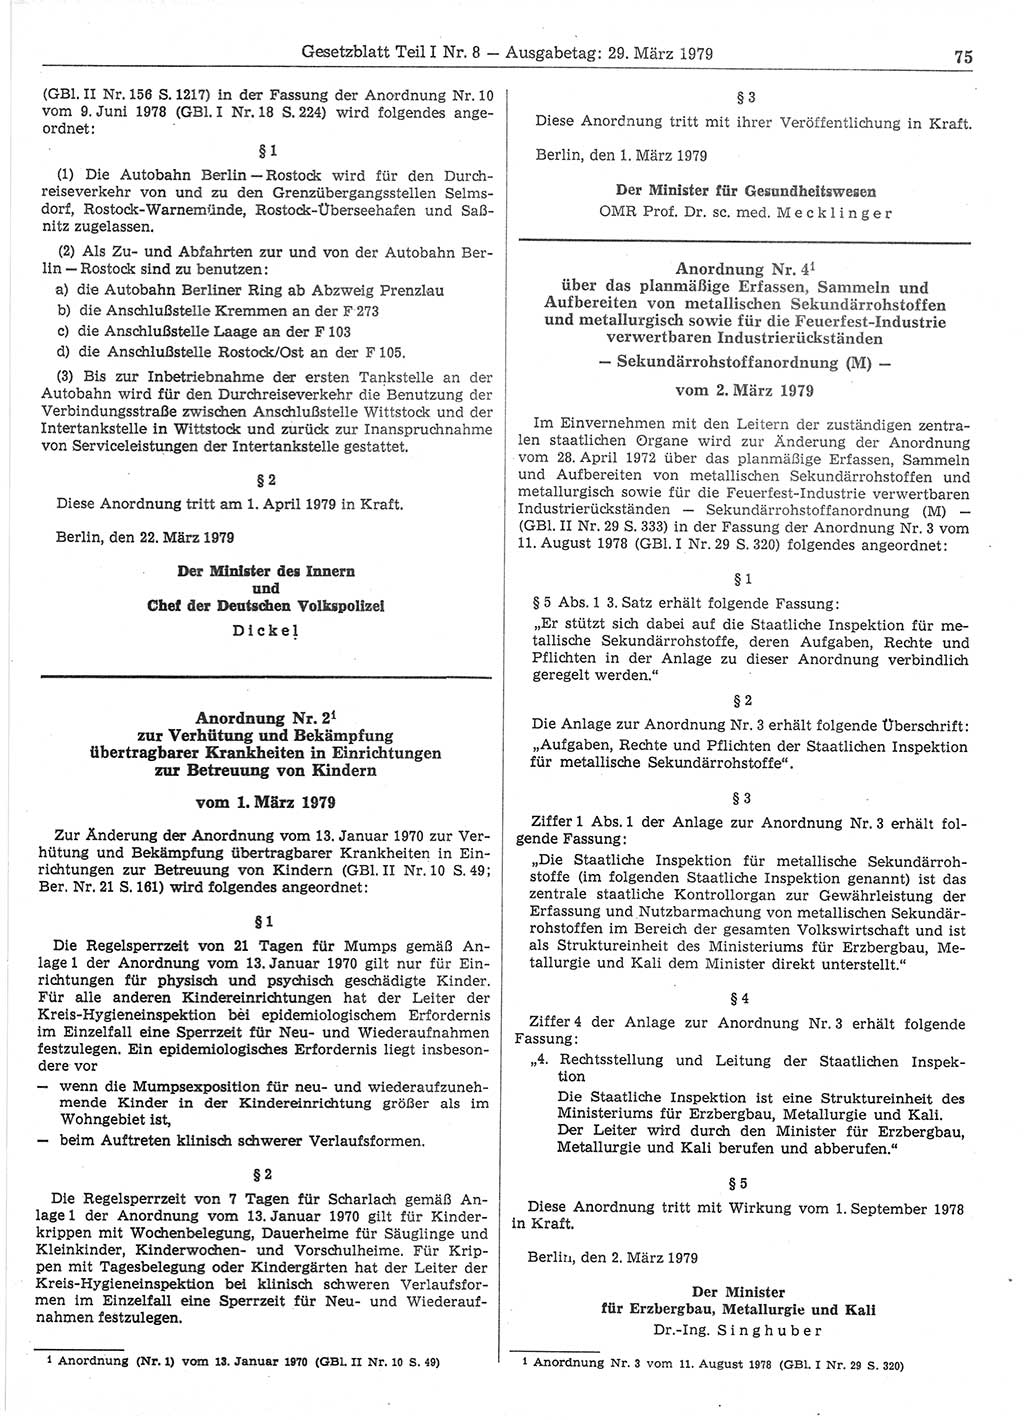 Gesetzblatt (GBl.) der Deutschen Demokratischen Republik (DDR) Teil Ⅰ 1979, Seite 75 (GBl. DDR Ⅰ 1979, S. 75)